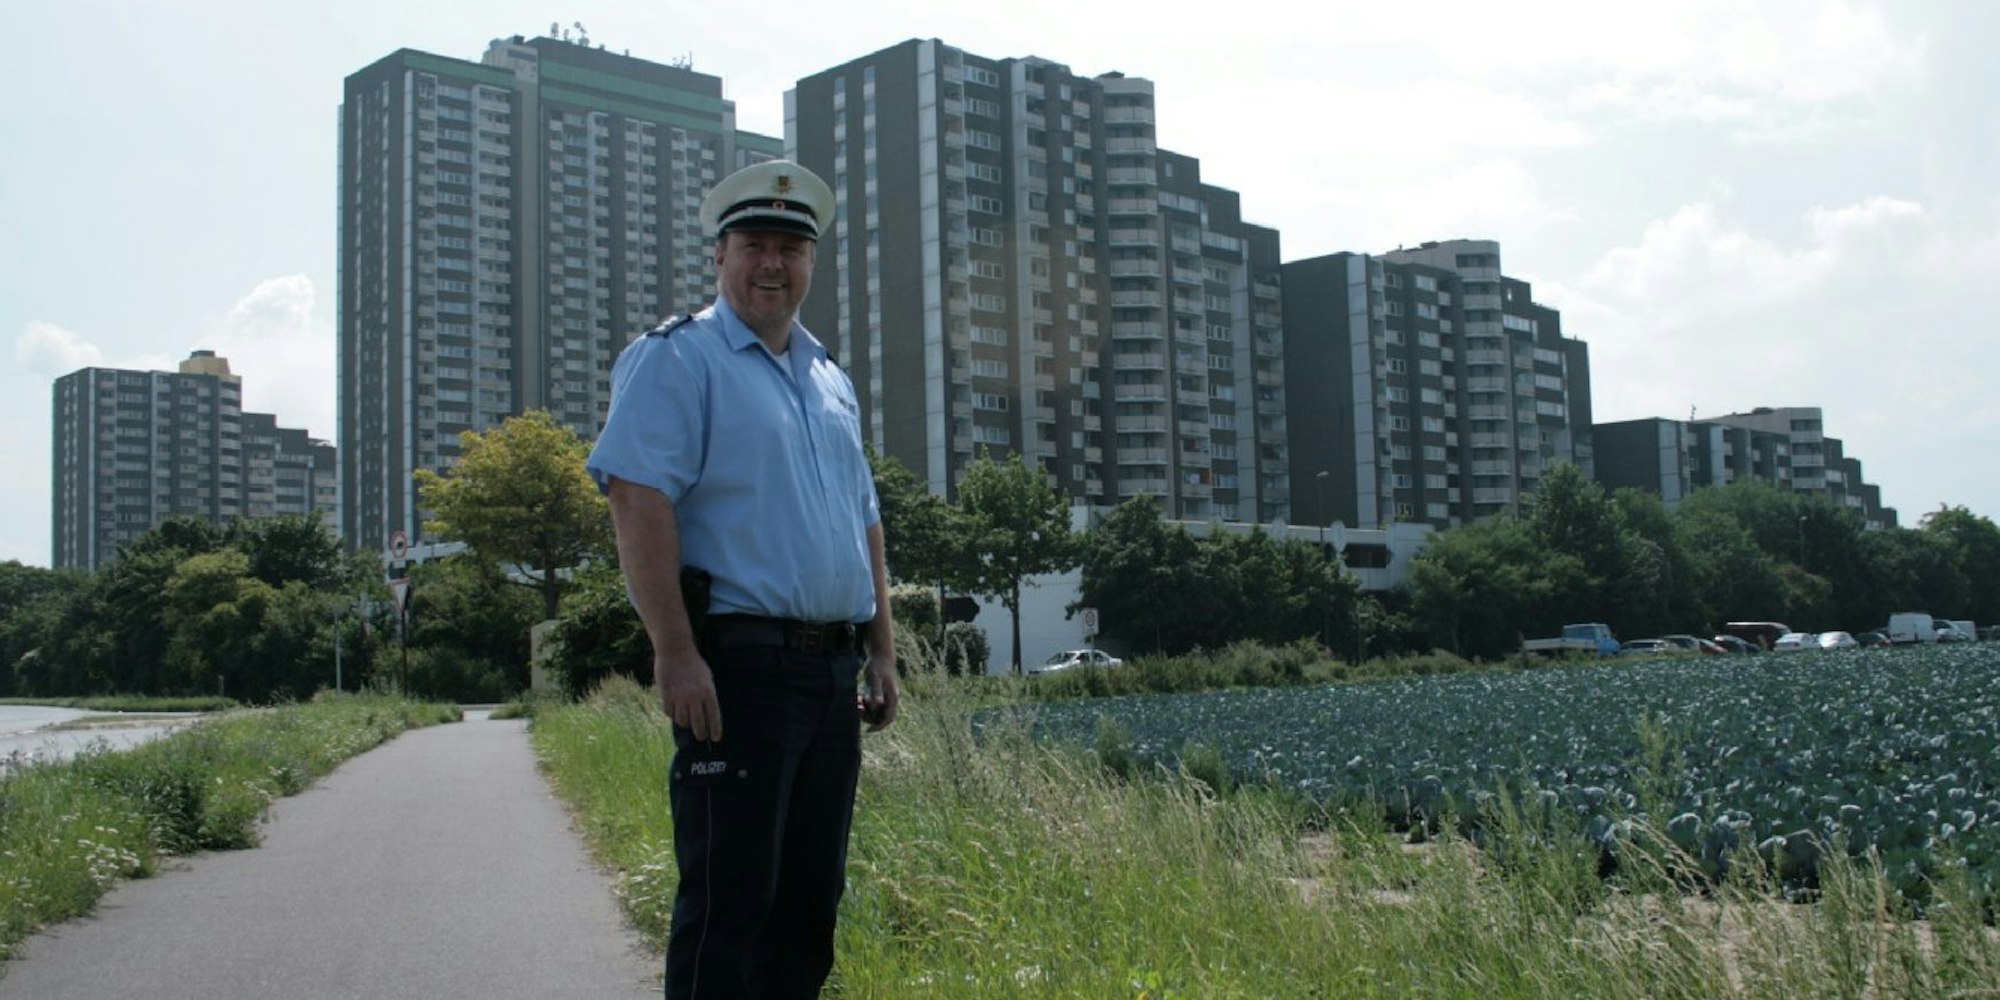 Bezirkspolizist Thilo Lotterer vor dem Panorama der Hochhaussiedlung in Mechenisch.